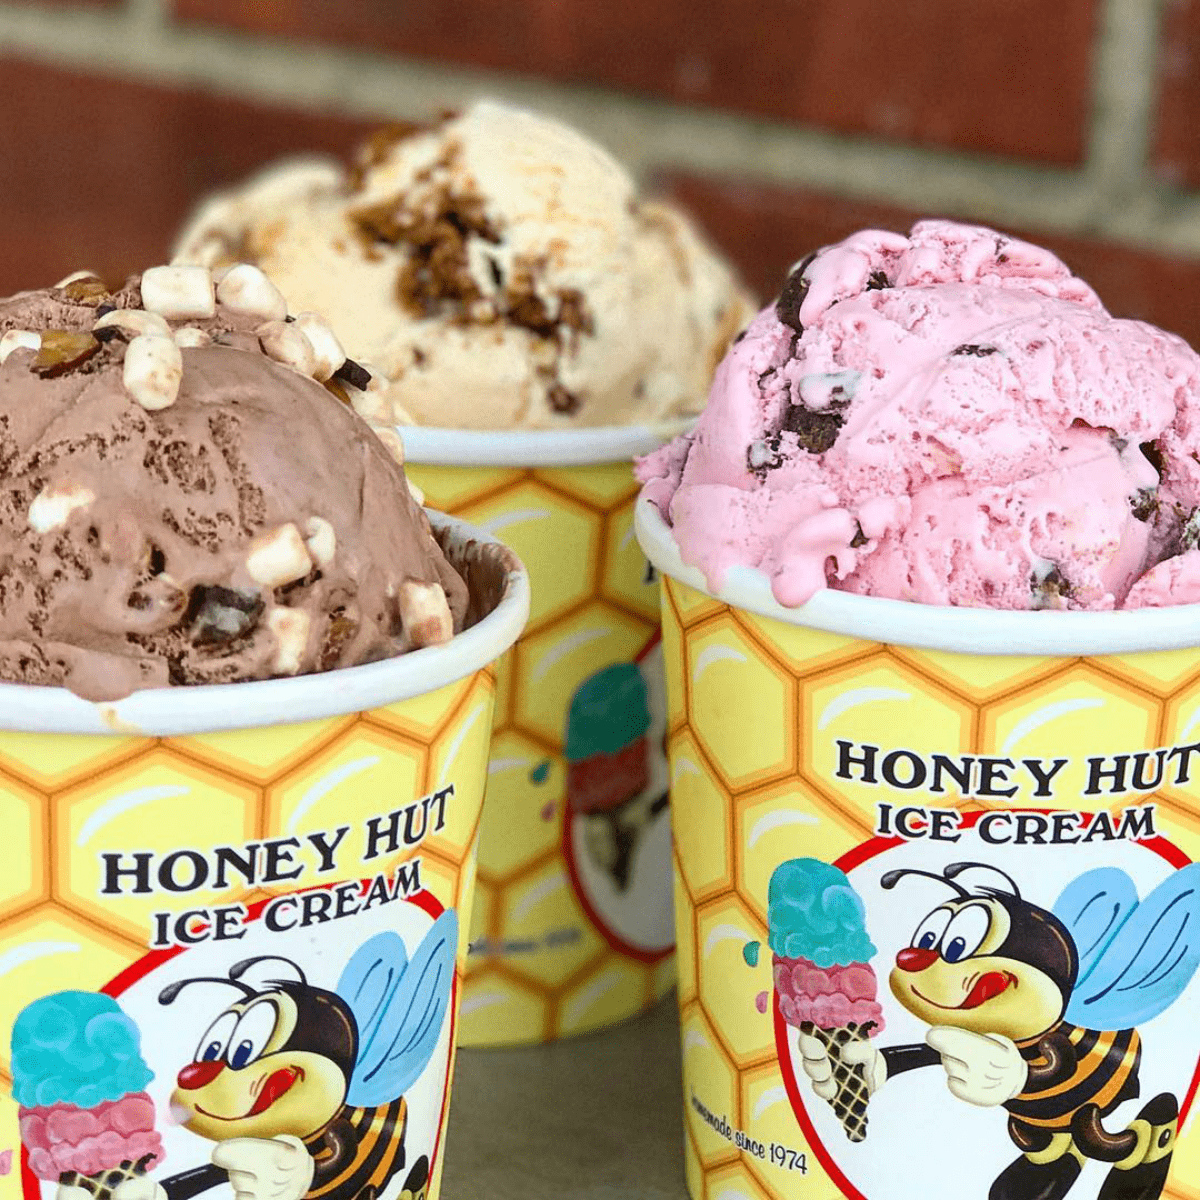 honey hut ice cream in ohio